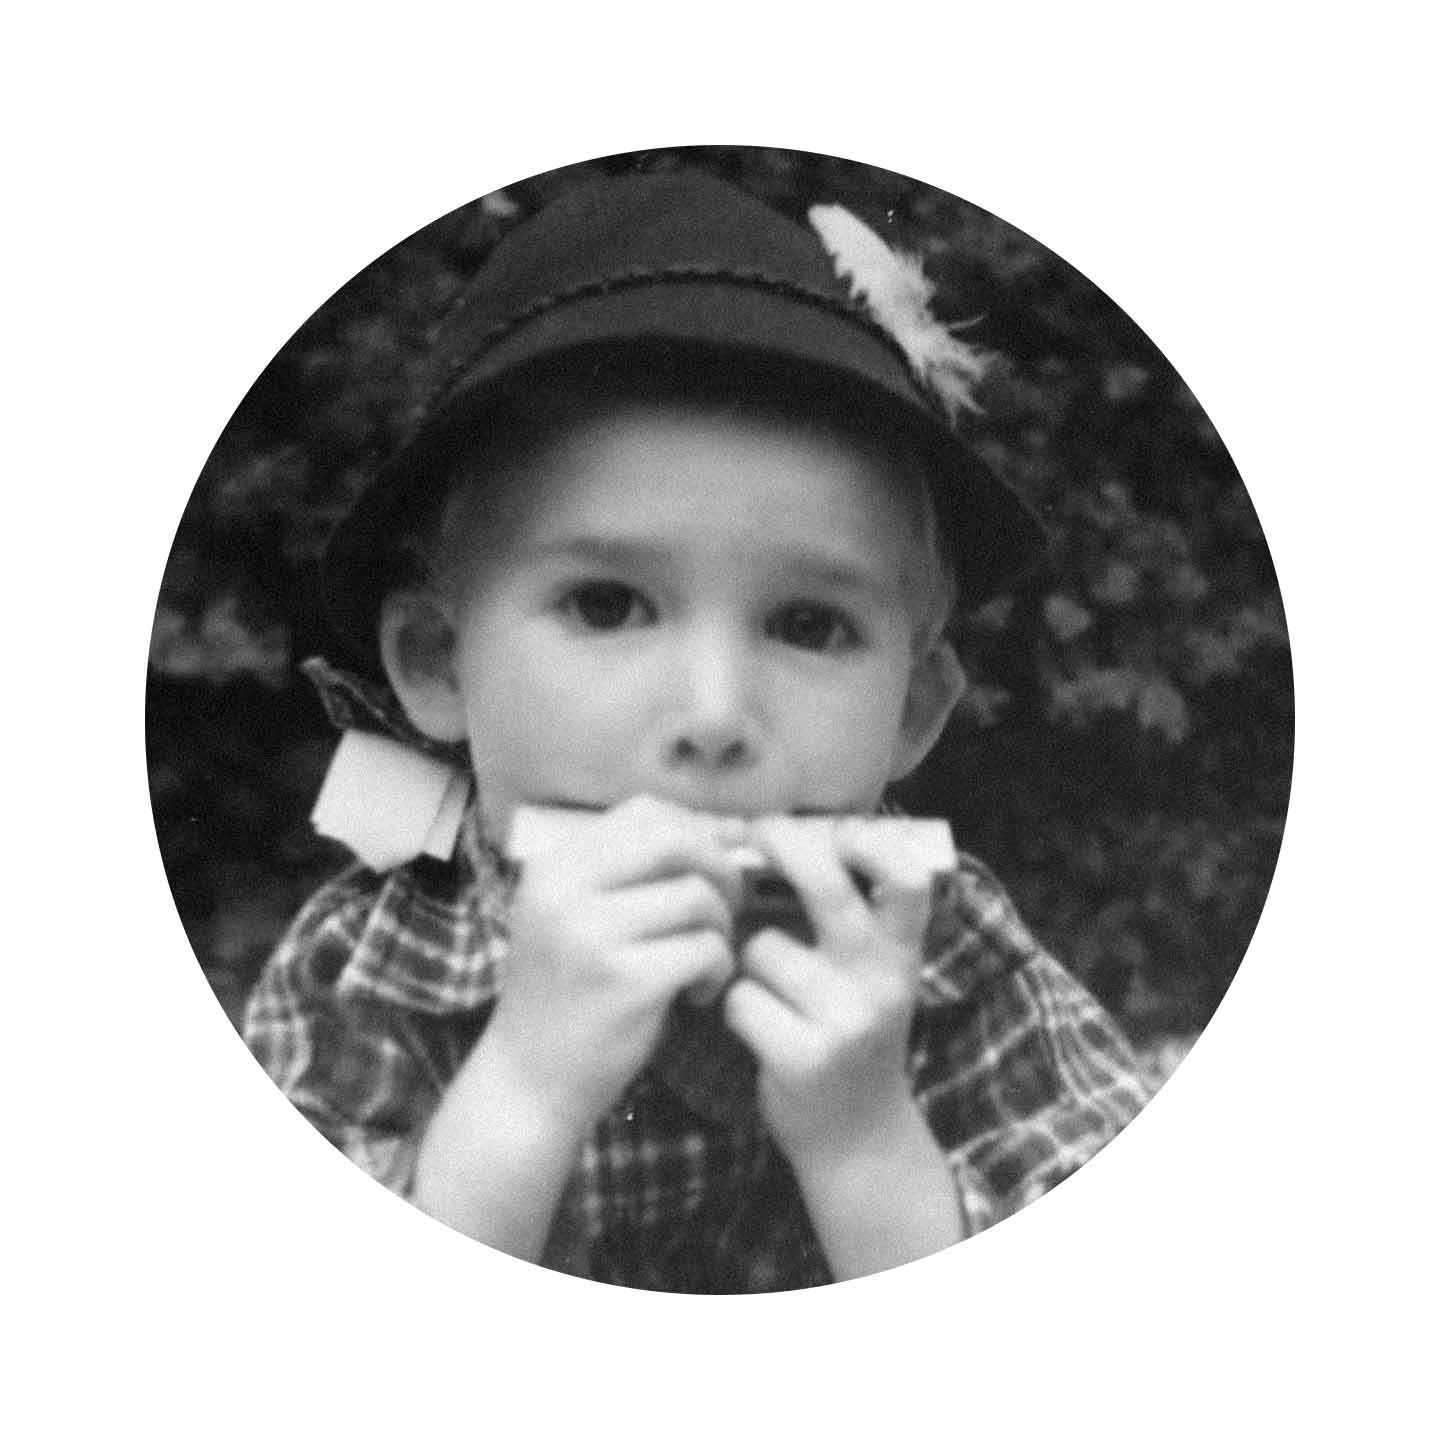 Kind mit Mütze und Mundharmonika 